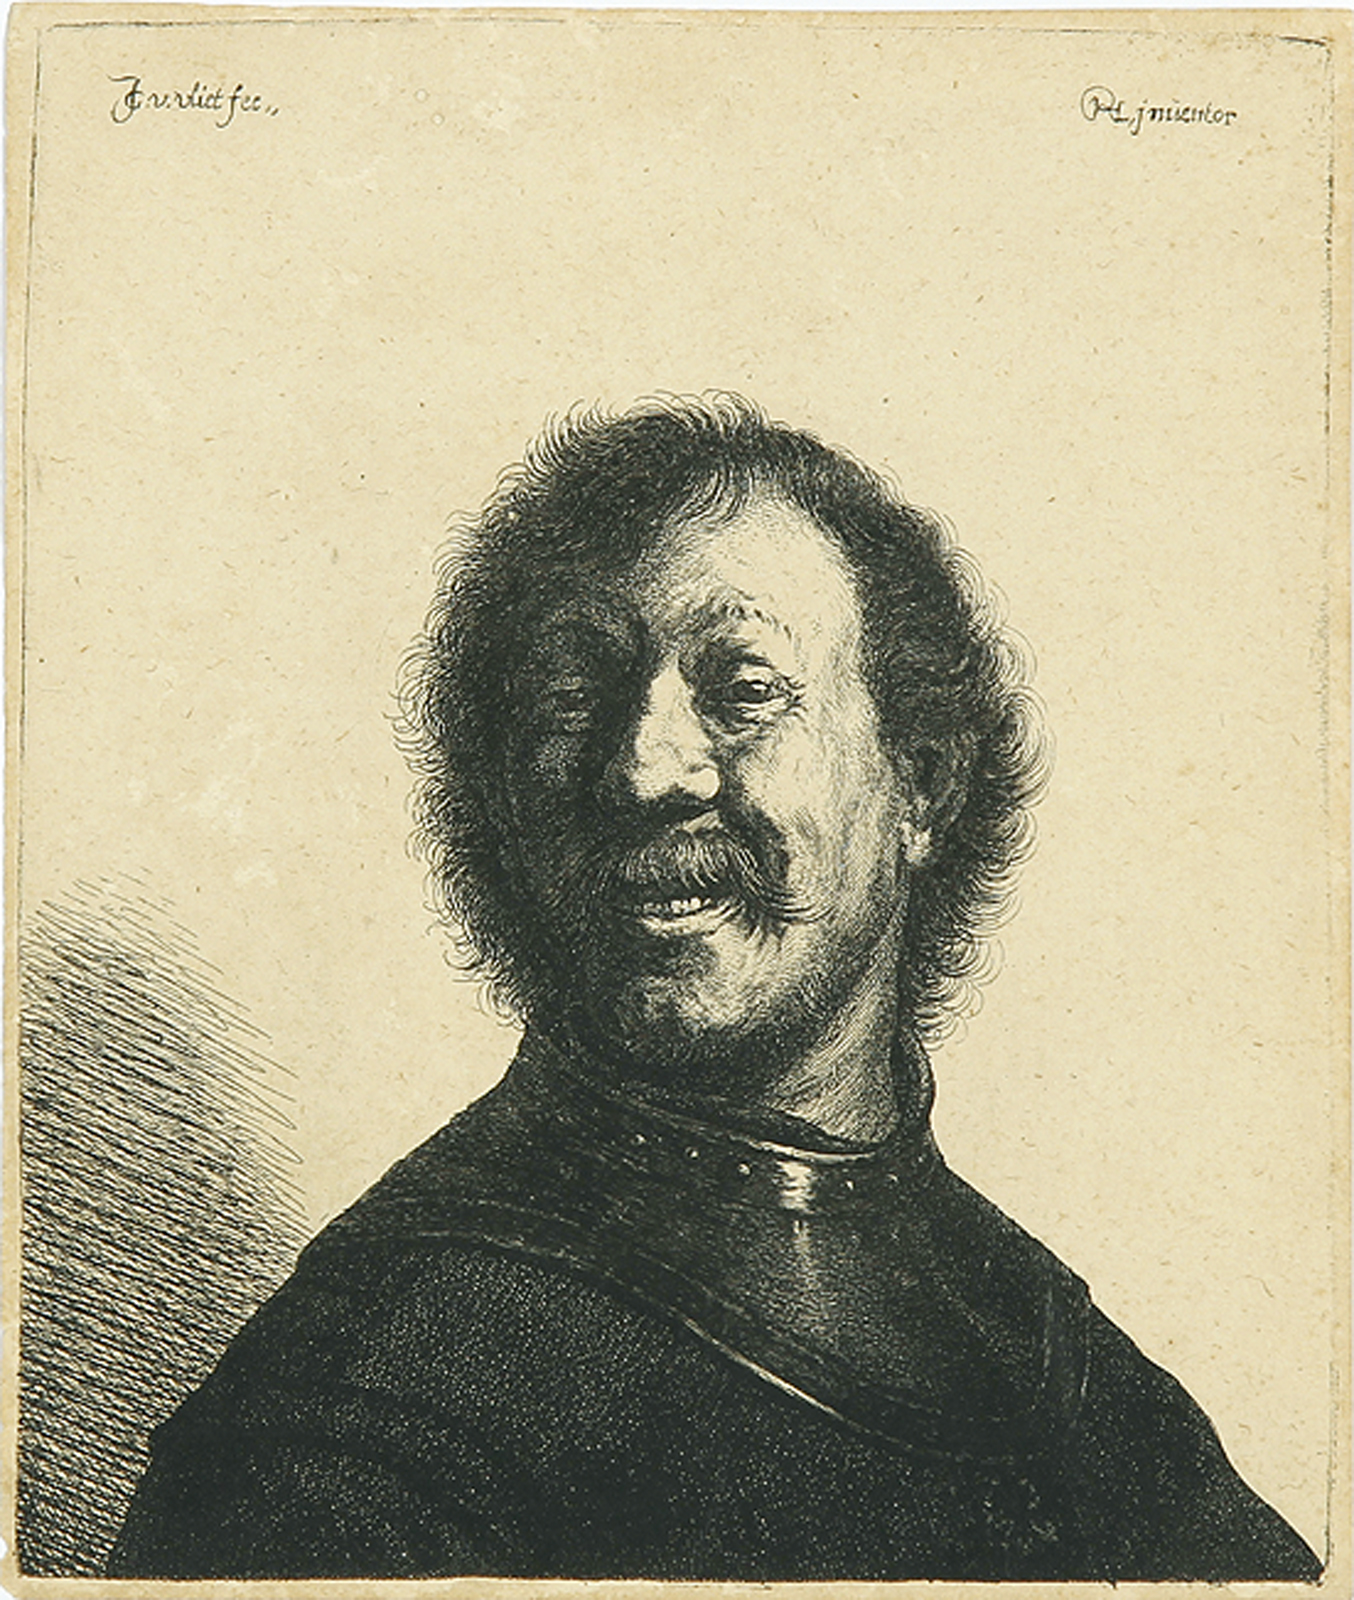 Brustbild eines lachenden Mannes mit Halsberge.